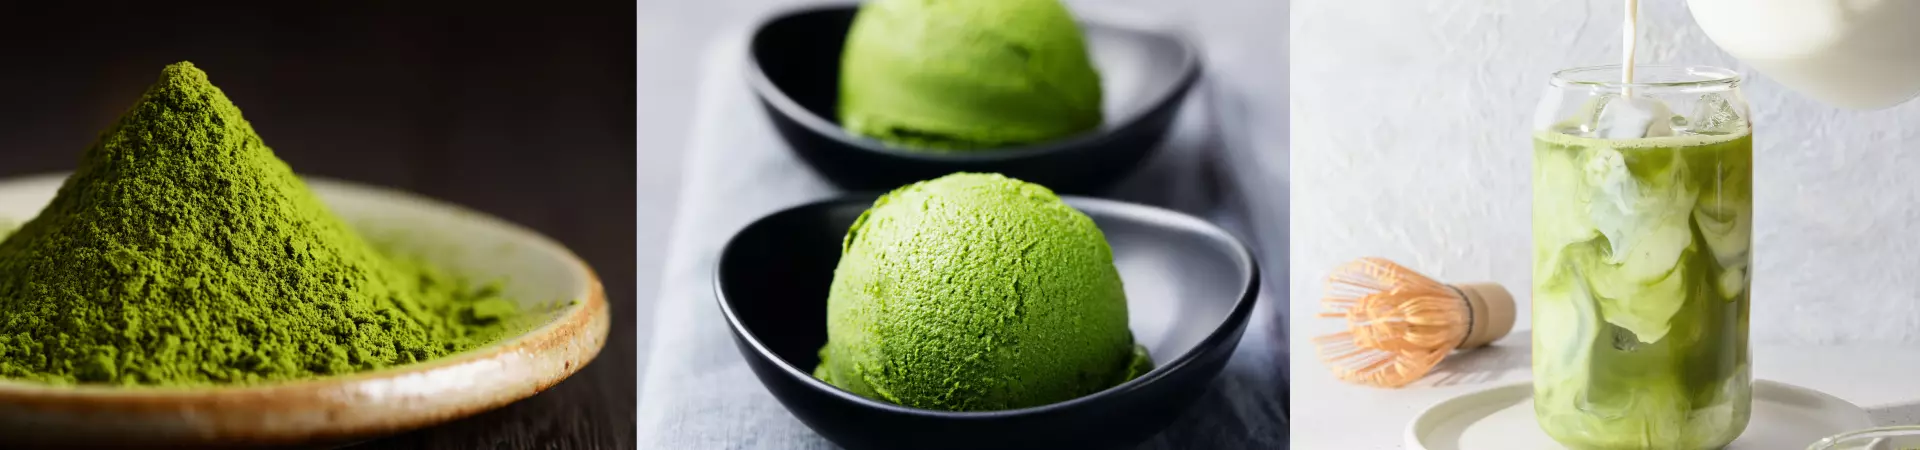 Pó de chá verde ao lado de um sorvete e uma bebida feitos a base do matcha chá verde da Desinchá.